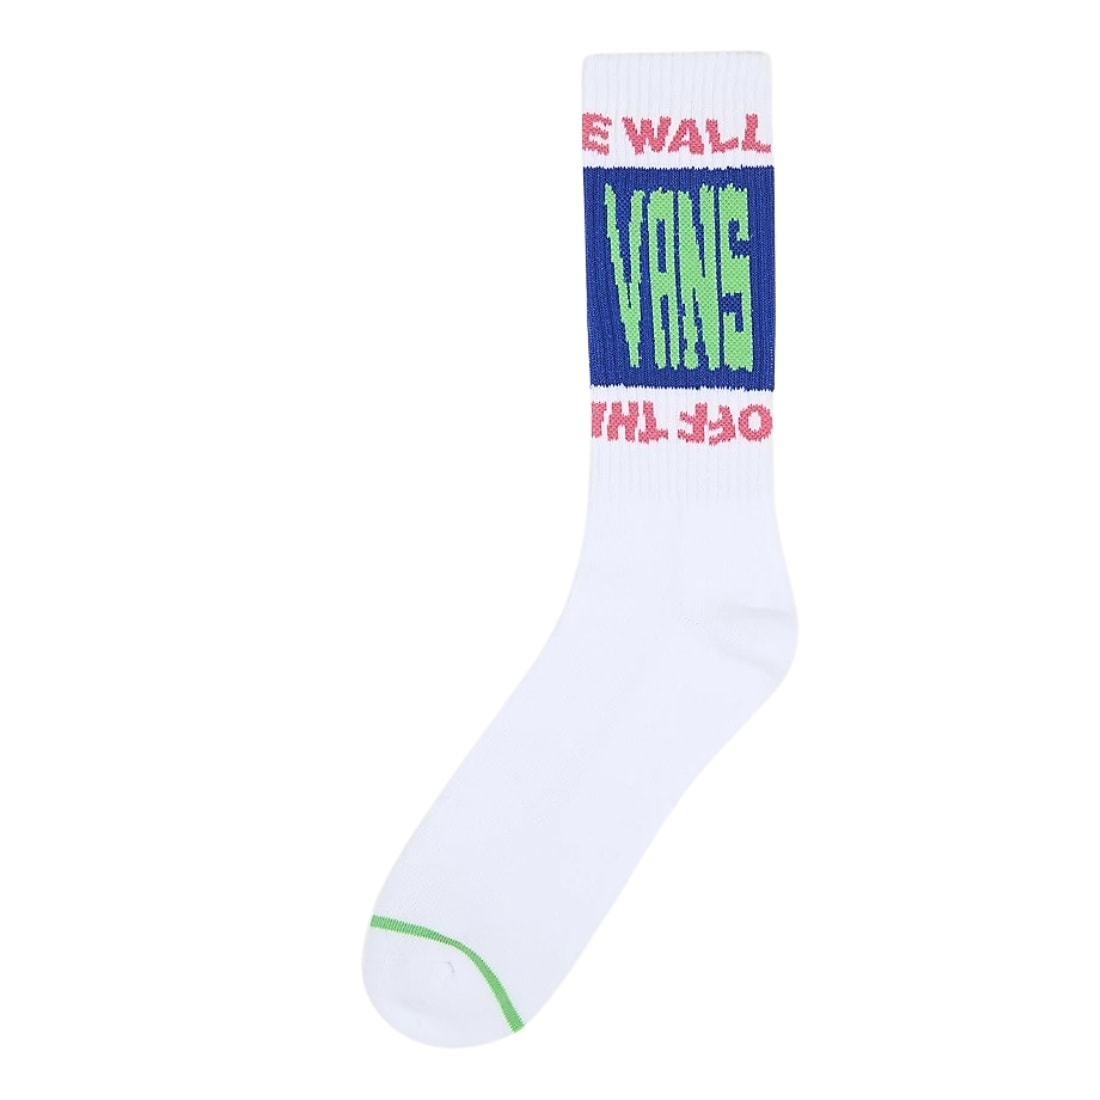 Vans Whammy Crew Socks - White - Mens Crew Length Socks by Vans